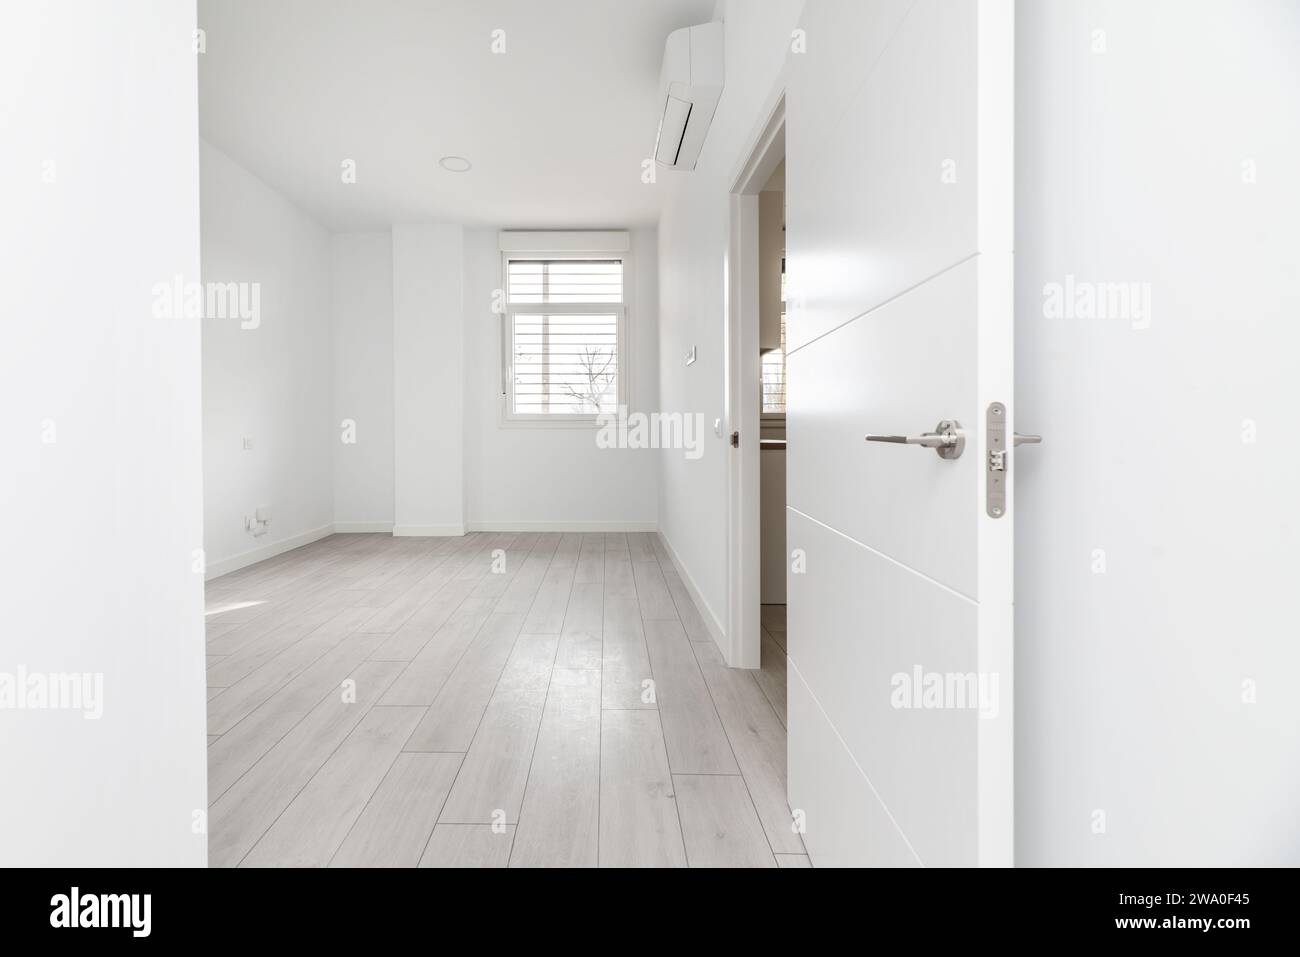 Corridoio di una casa con una stanza vuota in una casa di tipo loft al piano terra con pavimenti in legno chiaro e porte di accesso ad altre camere Foto Stock